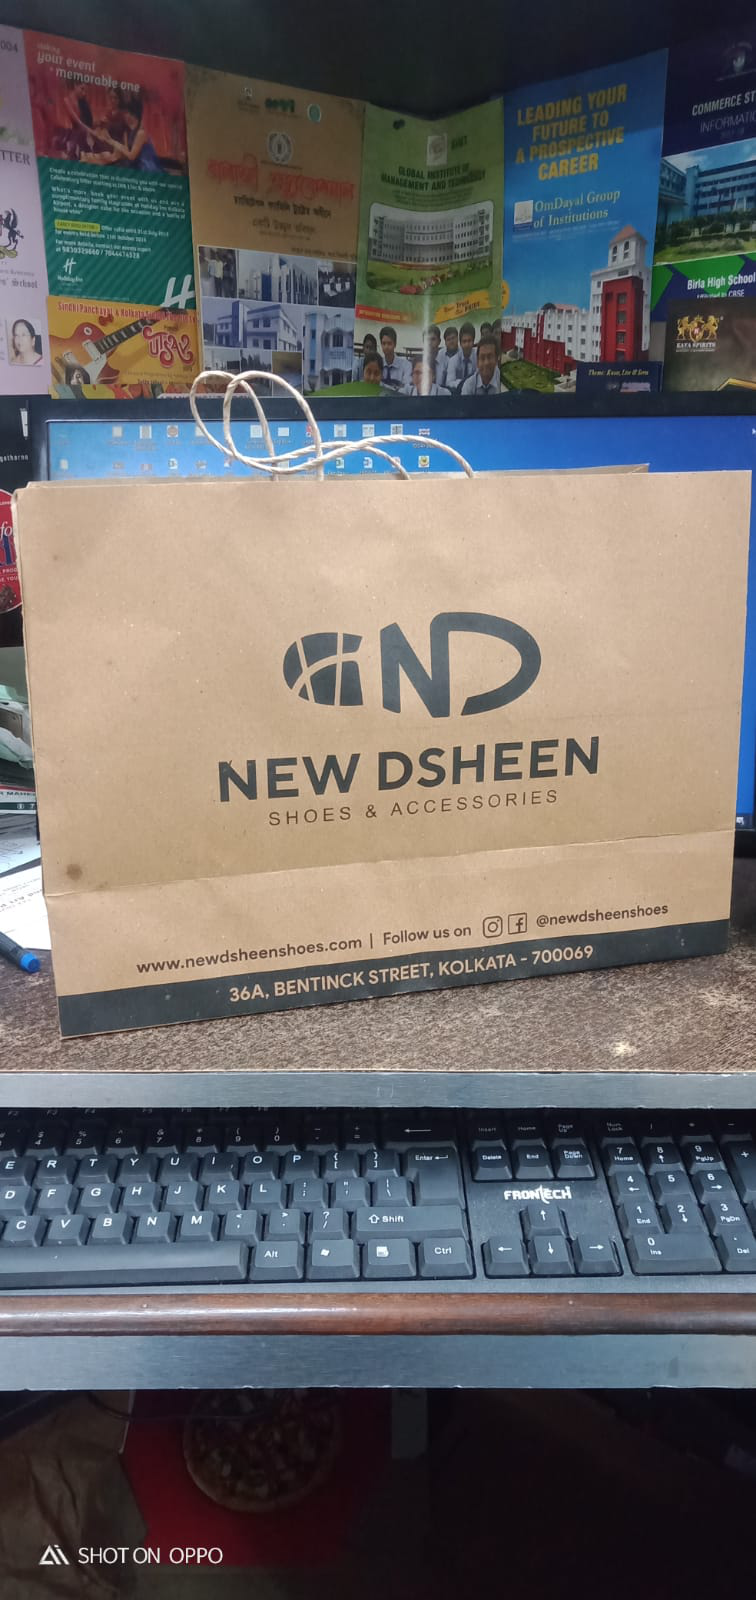 New Dsheen